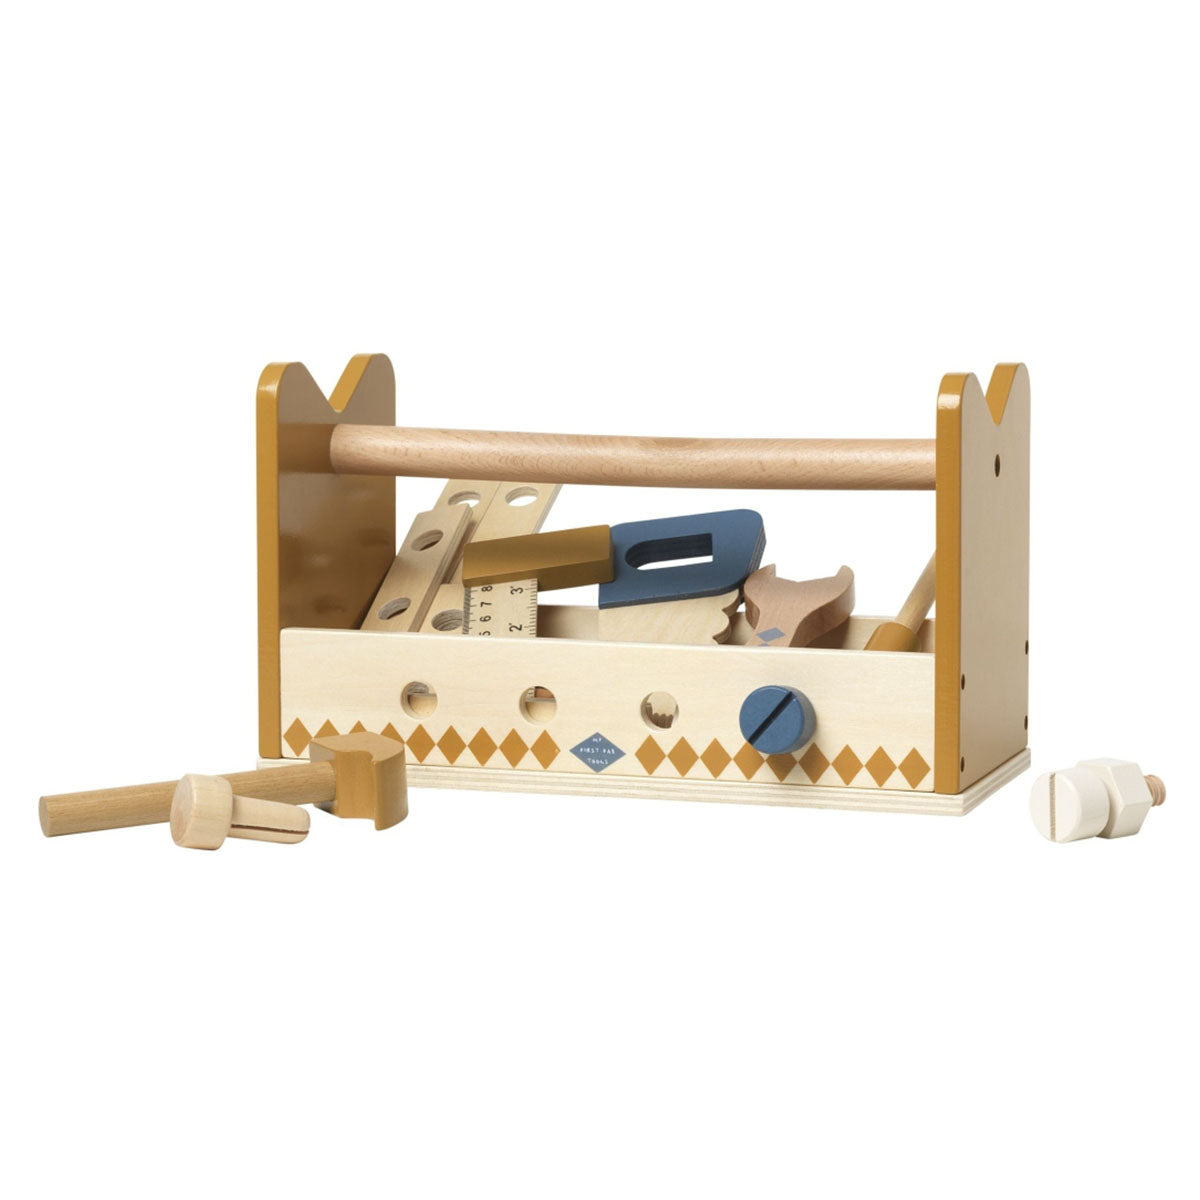 Heb jij een kleine bouwer in huis? Dan is deze gereedschapsset van Fabelab perfect voor jouw kindje. De houten set bestaat o.a. uit een hamer, schroevendraaier, moersleutel, zaag, liniaal, moeren en bouten. VanZus